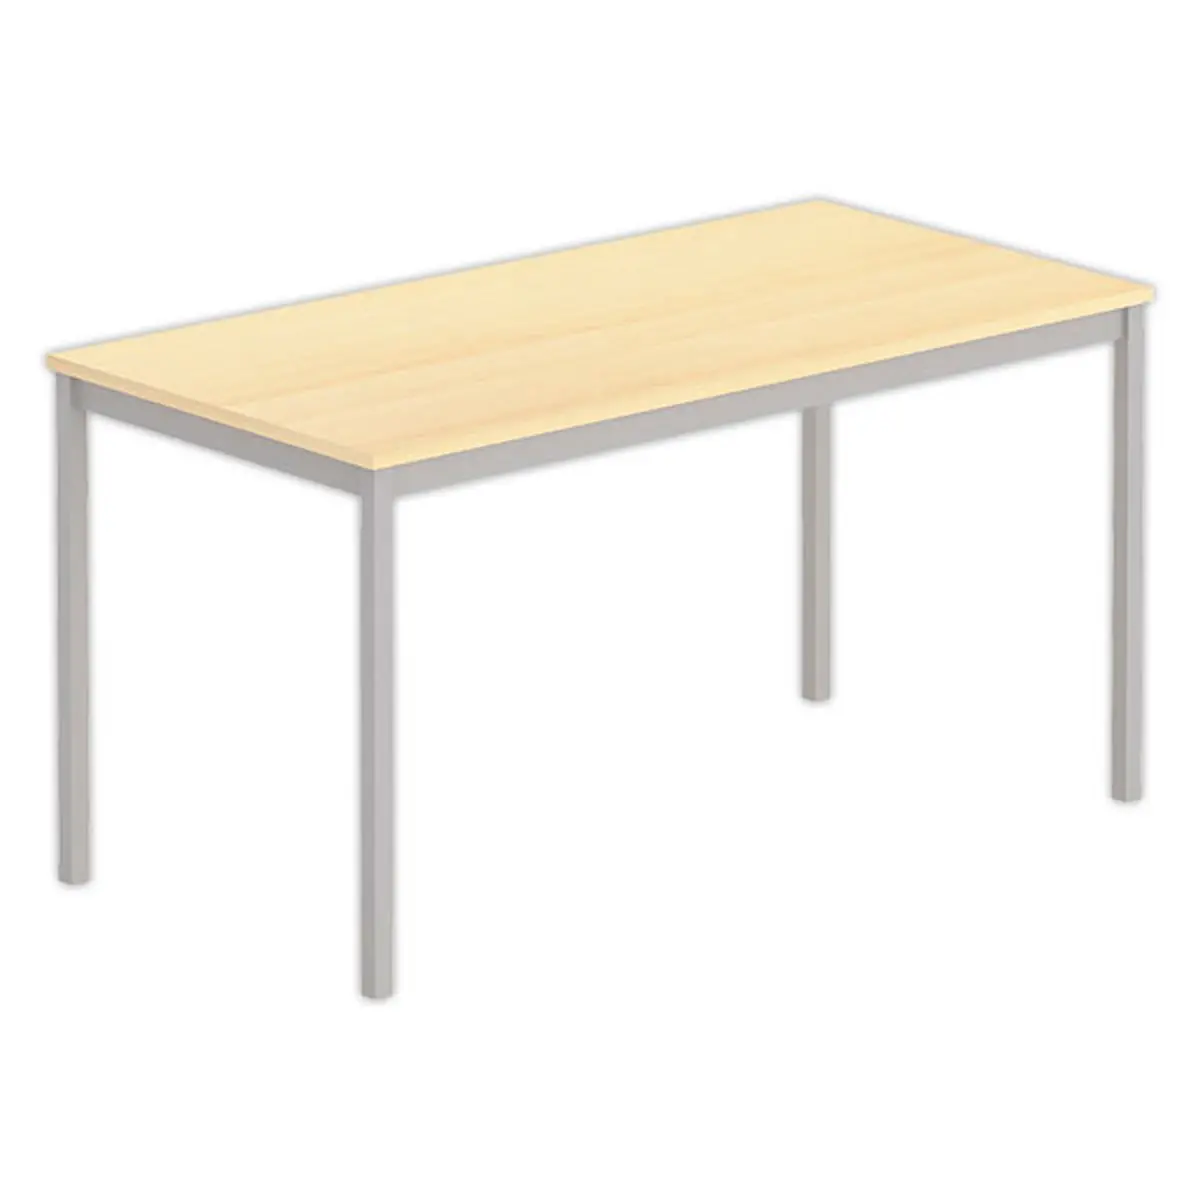 Table polyvalente rectangulaire - 140 x 70 cm - Hêtre et aluminium photo du produit